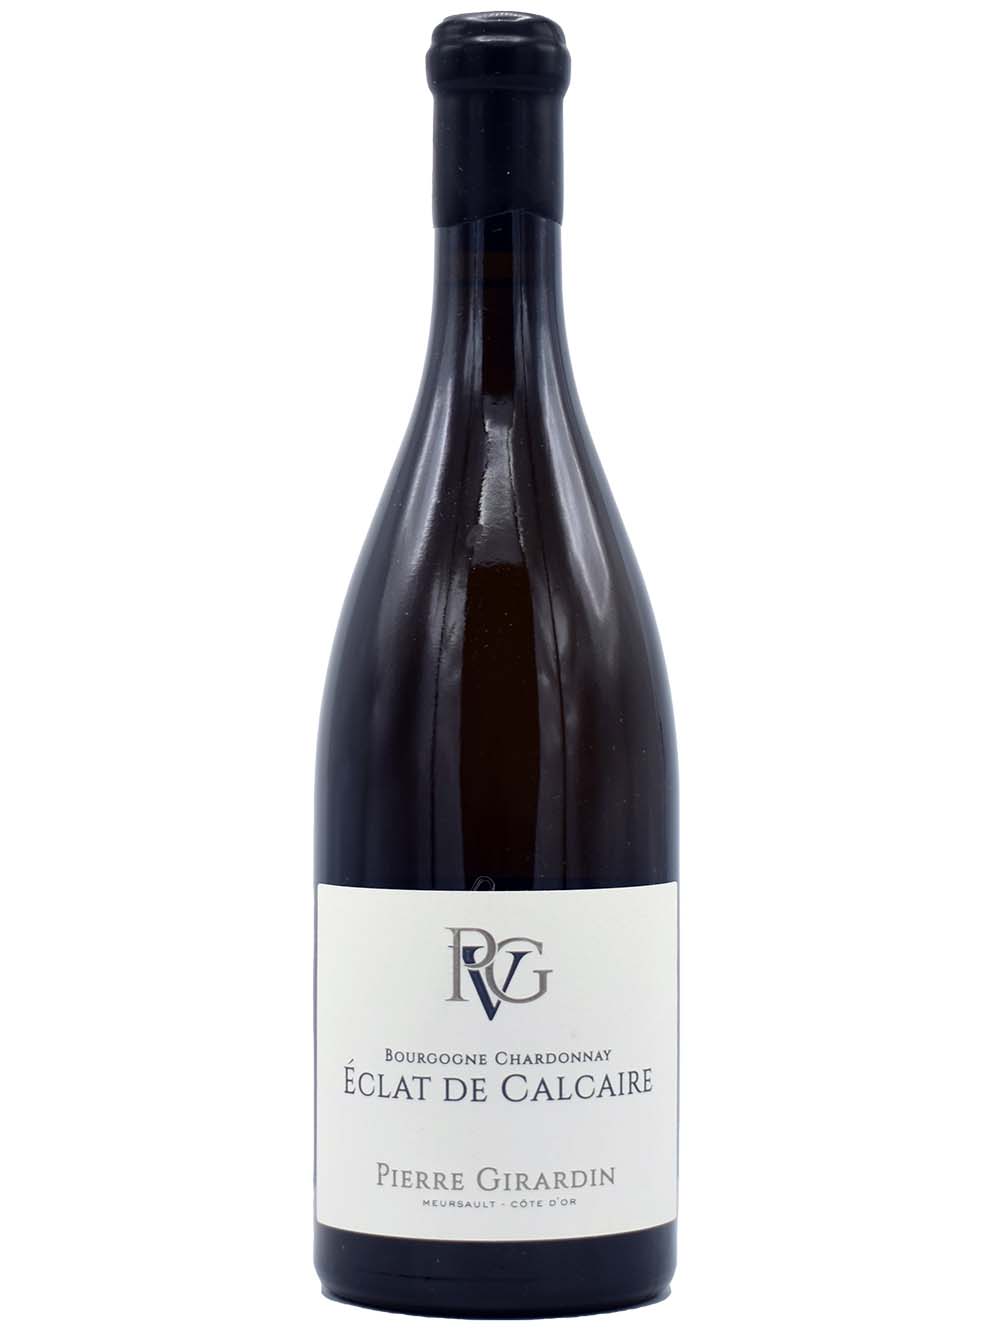 Bourgogne chardonnay Eclat de Calcaire